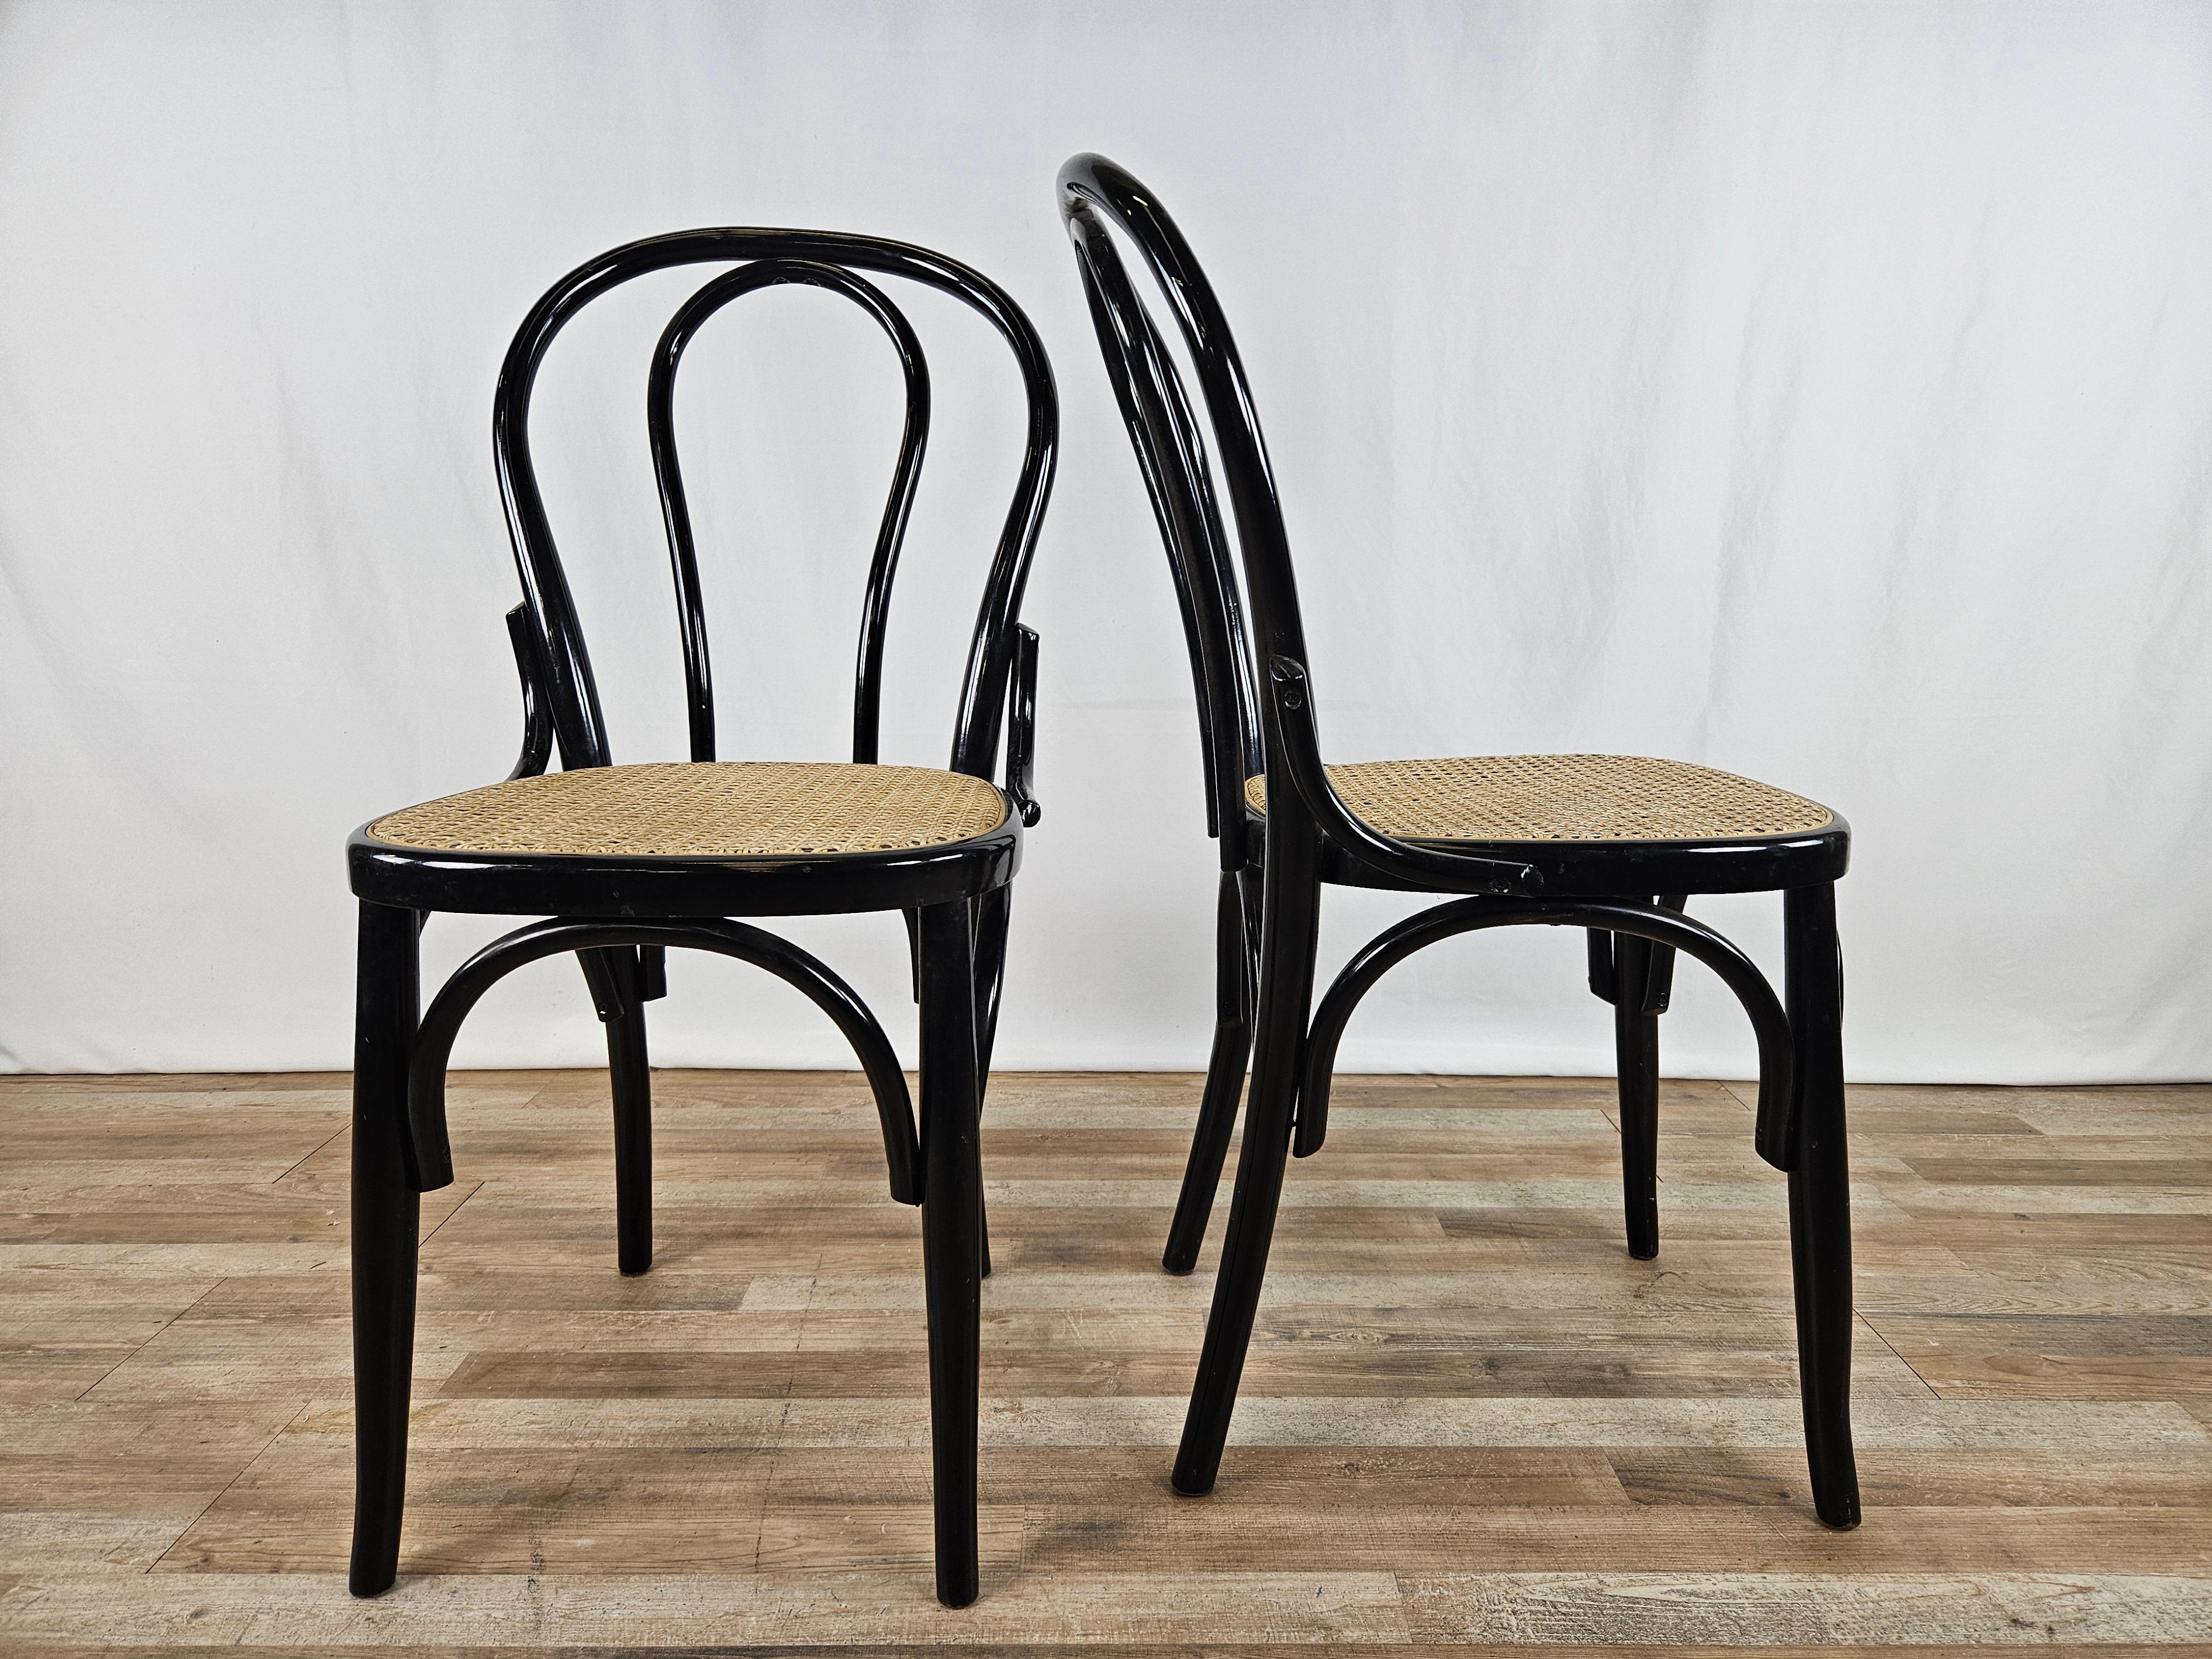 Coppia di sedie in legno laccato nero con seduta in paglia di Vienna e archetto decorativo tra schienale e seduta.

Ideali per cucine, uffici, soggiorni o come elementi d'arredo.

Normali segni dovuti all'età e all'utilizzo.